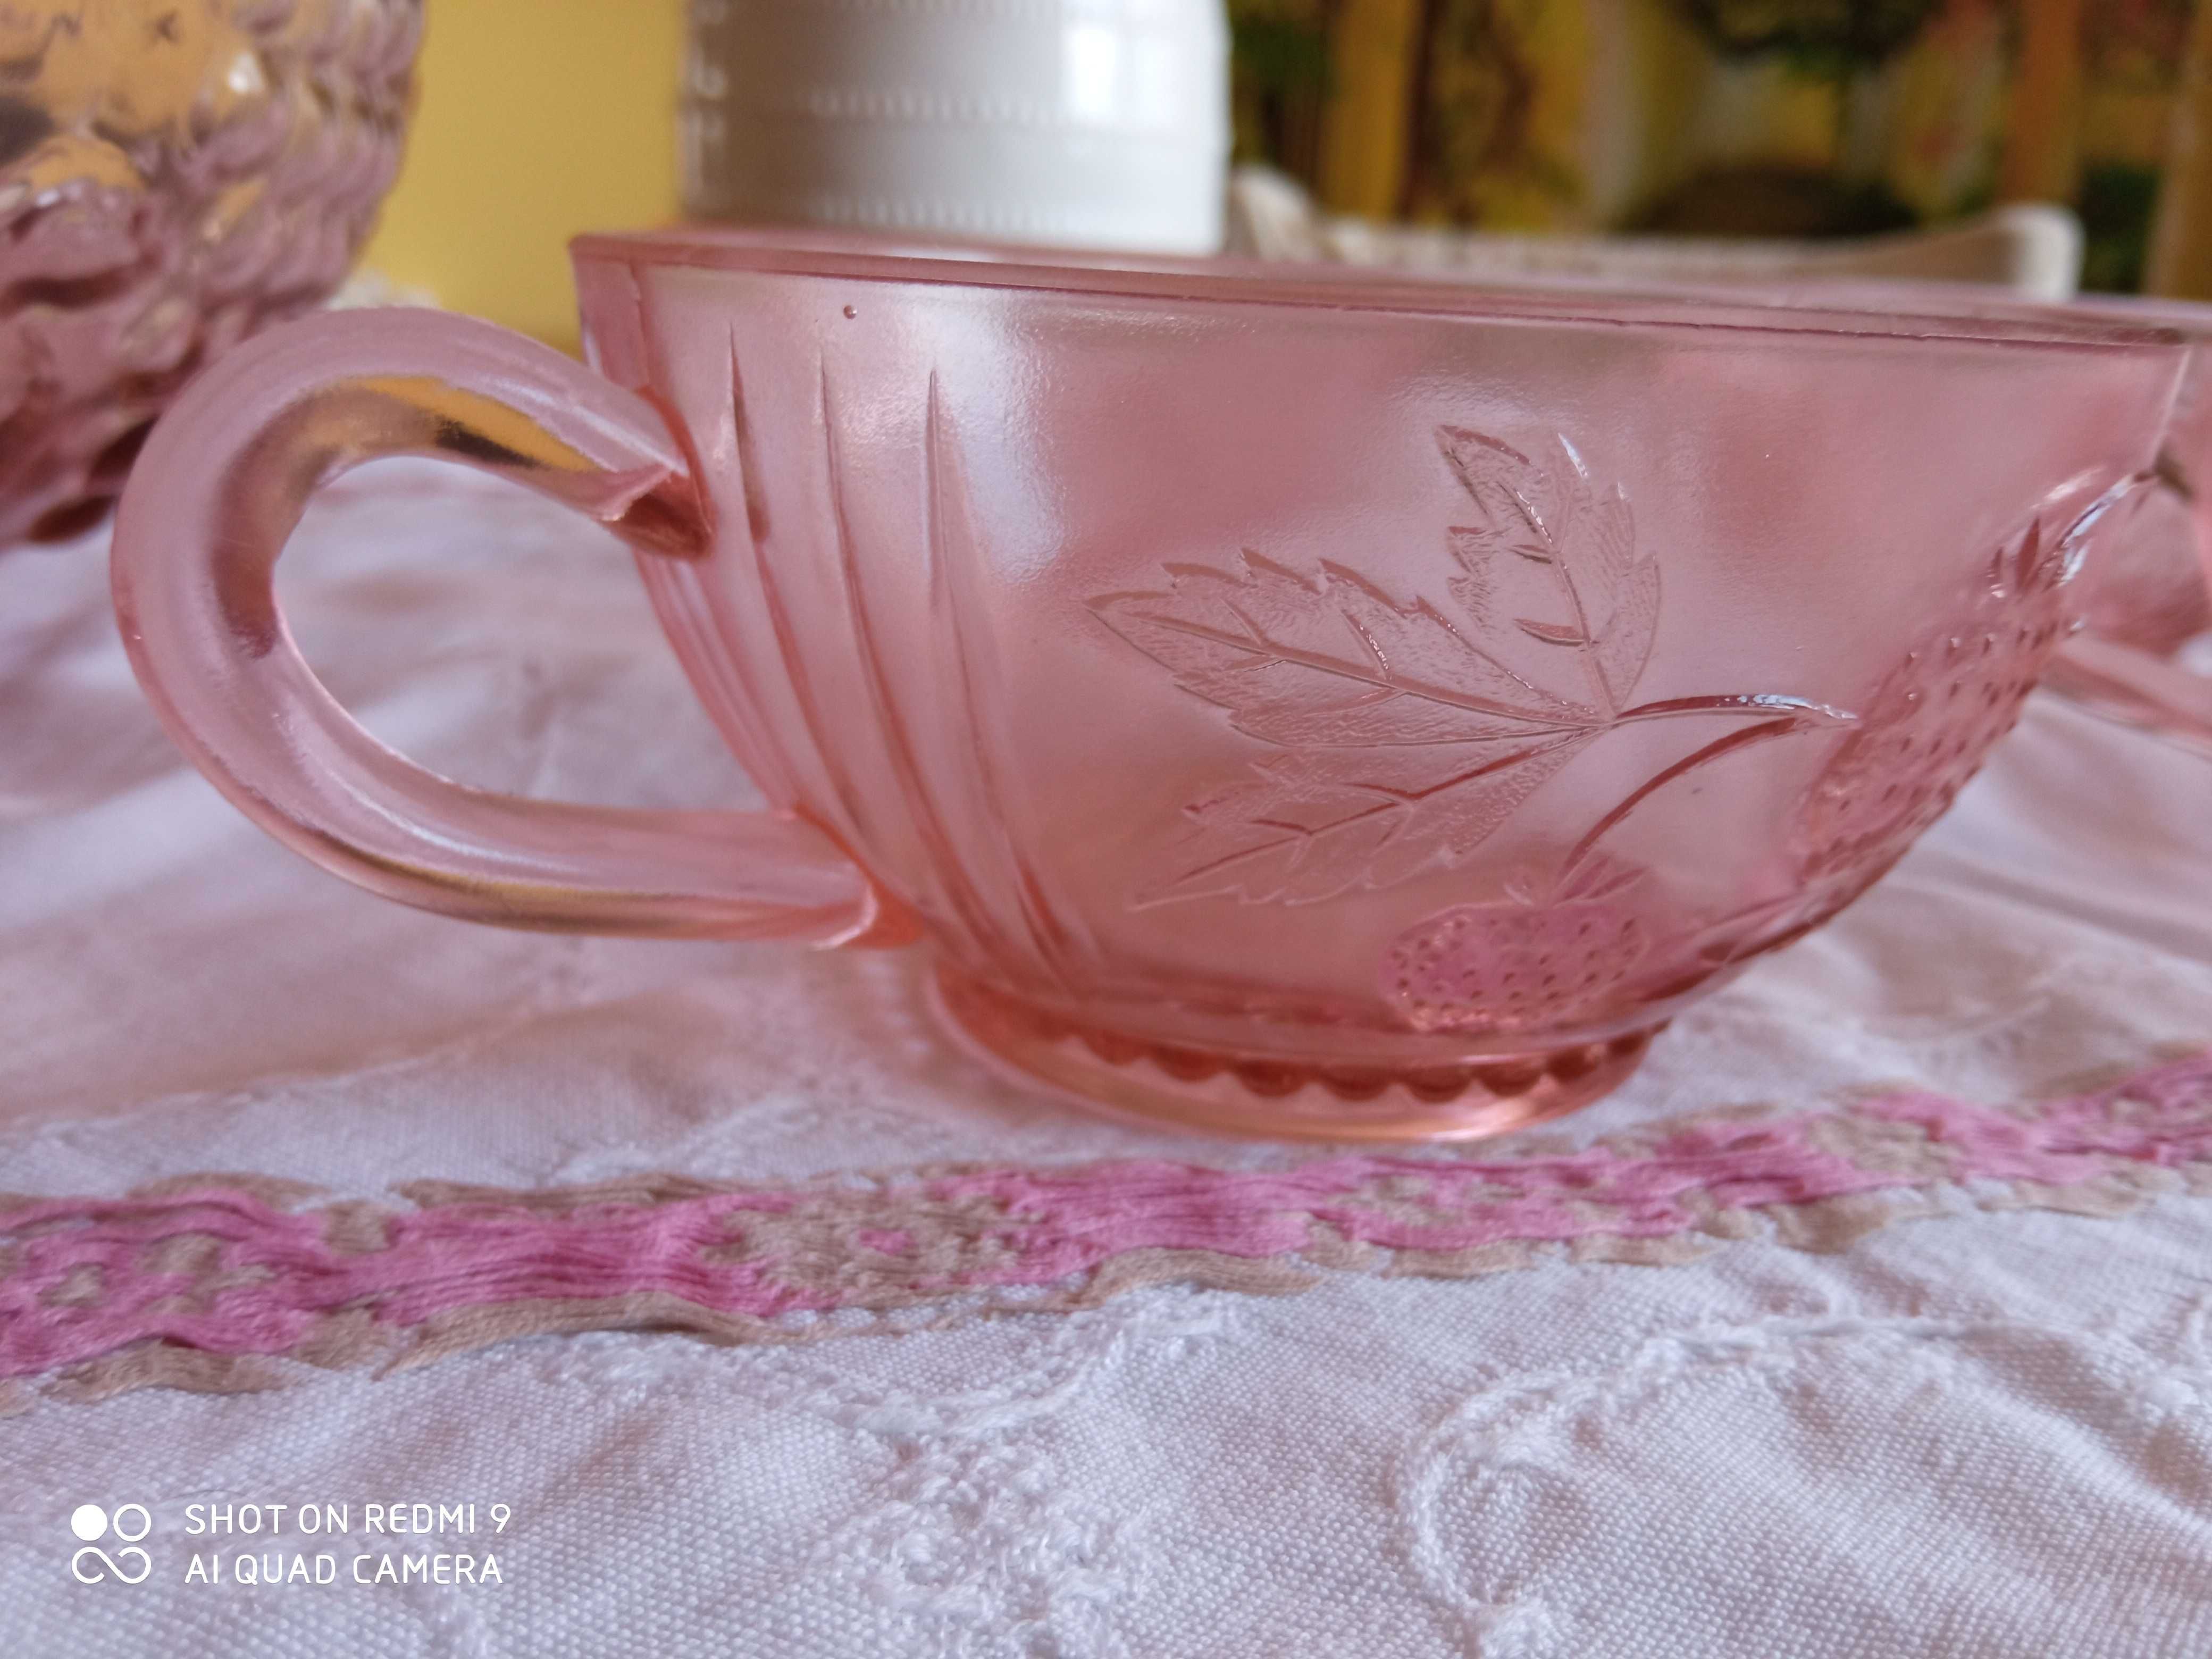 Rozalinowy różowy zestaw do ponczu waza + 6 filiżanek stare szkło PRL?